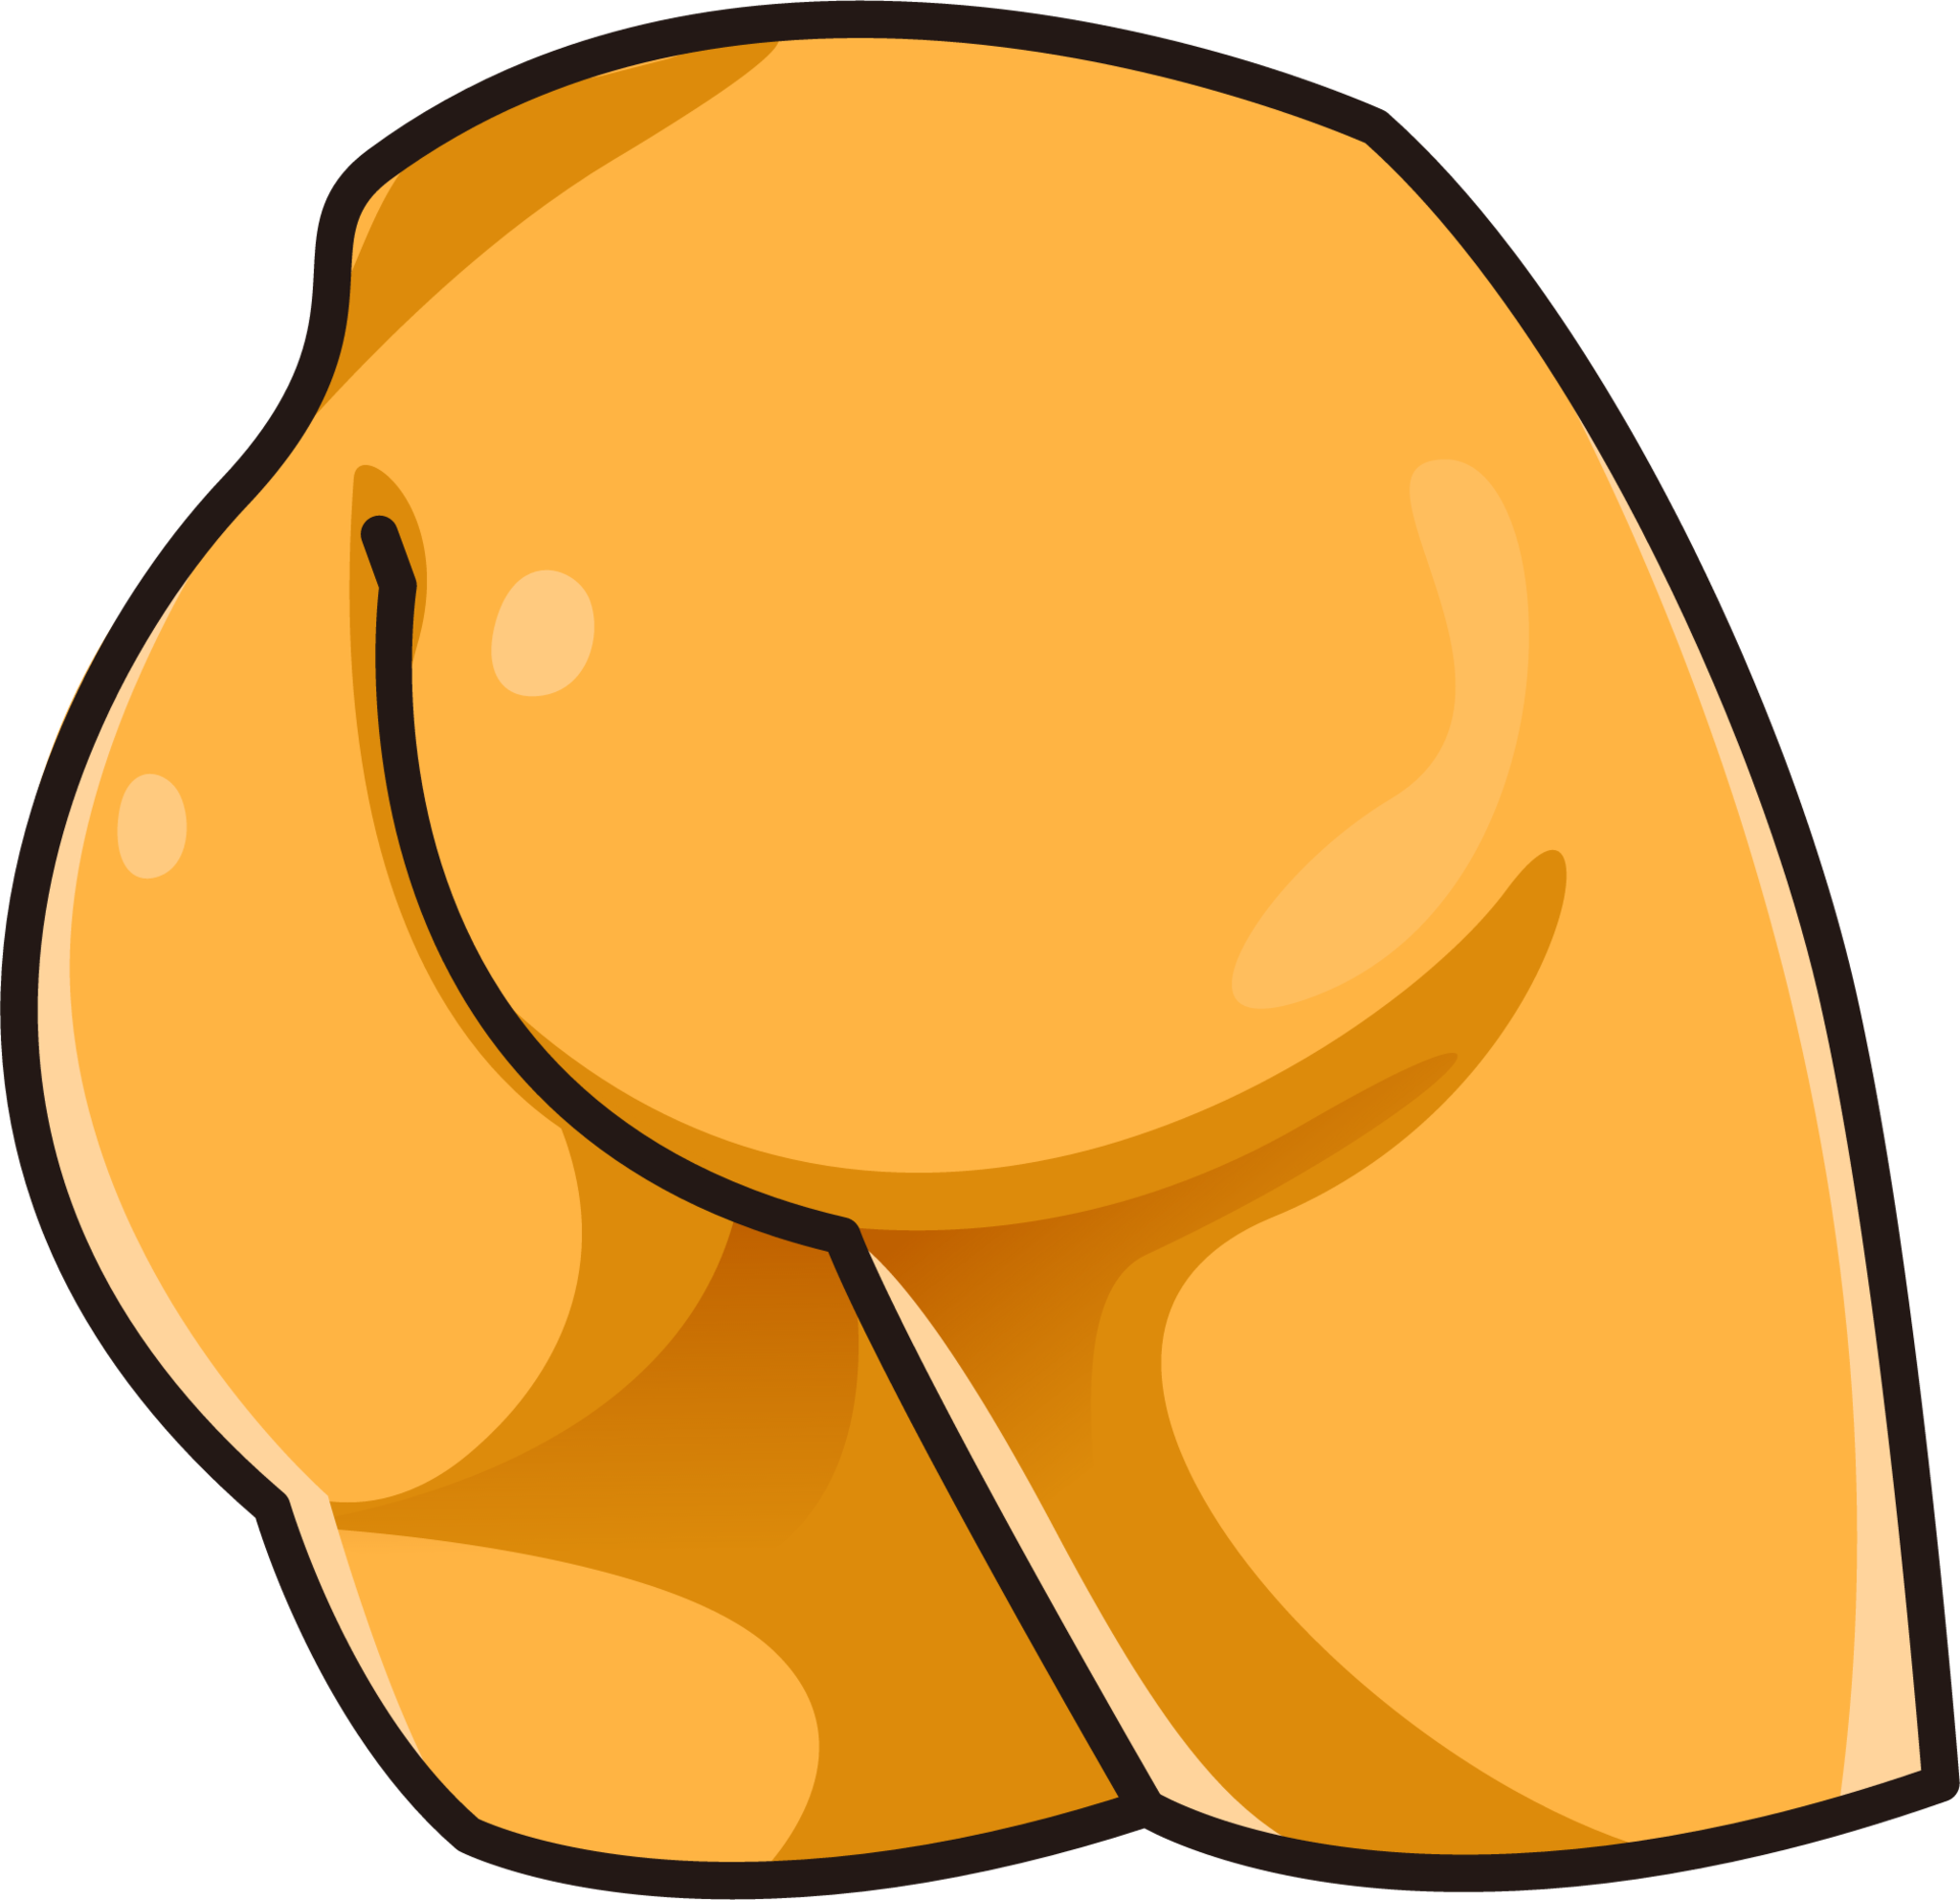 butt-emoji-2048x1985-wlvvsddm.png